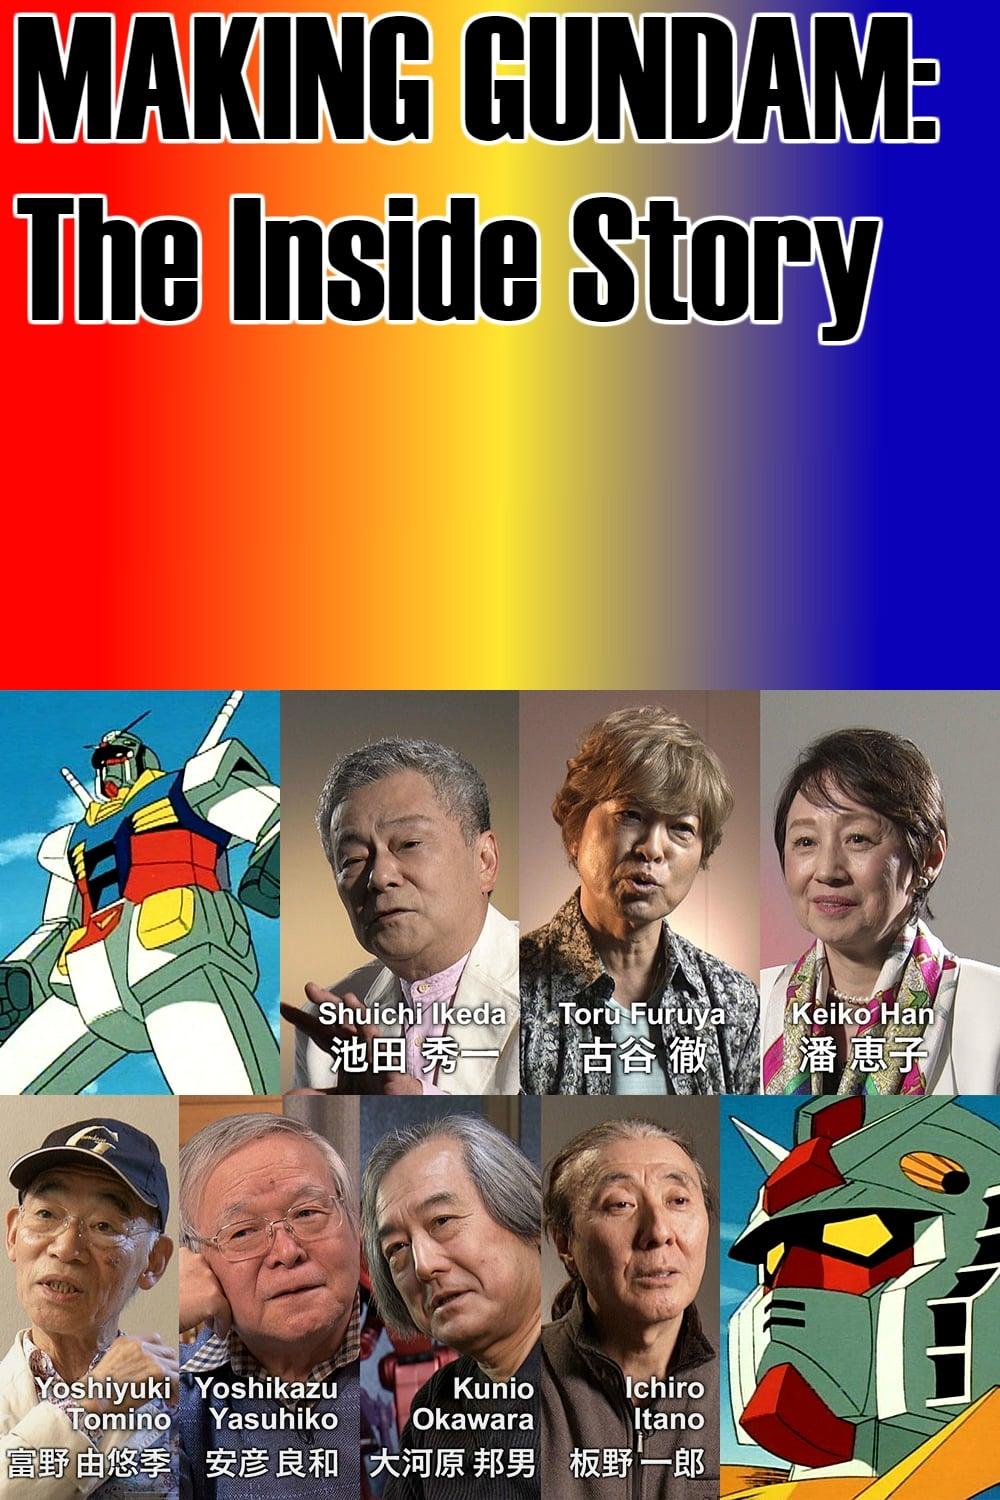 Making Gundam: The Inside Story poster